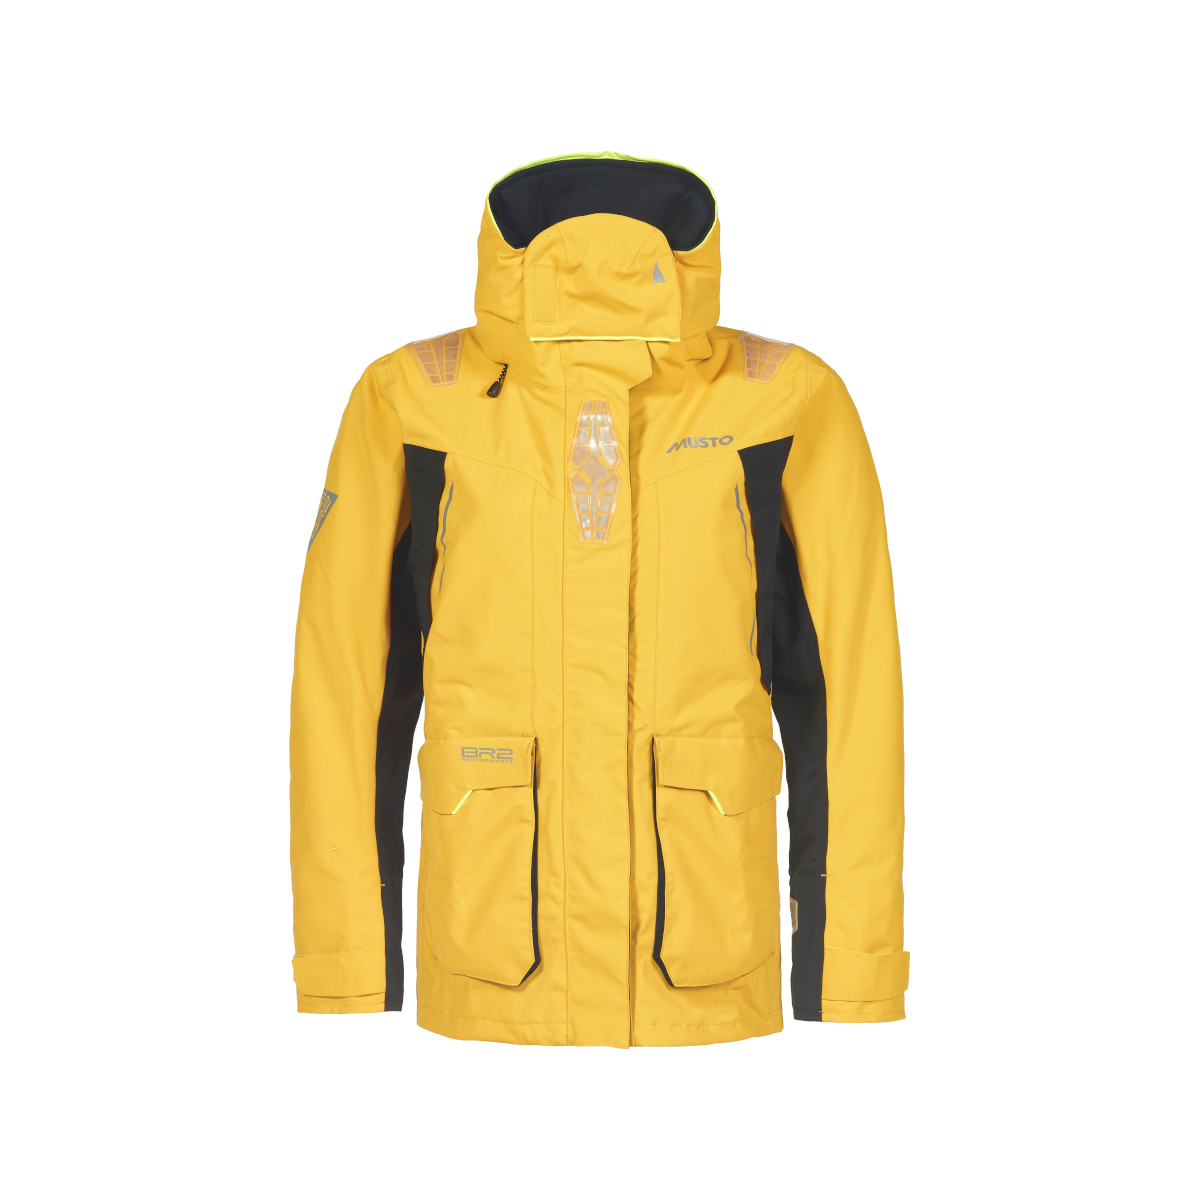 Musto BR2 veste de voile Offshore 2.0 femme jaune, taille 8